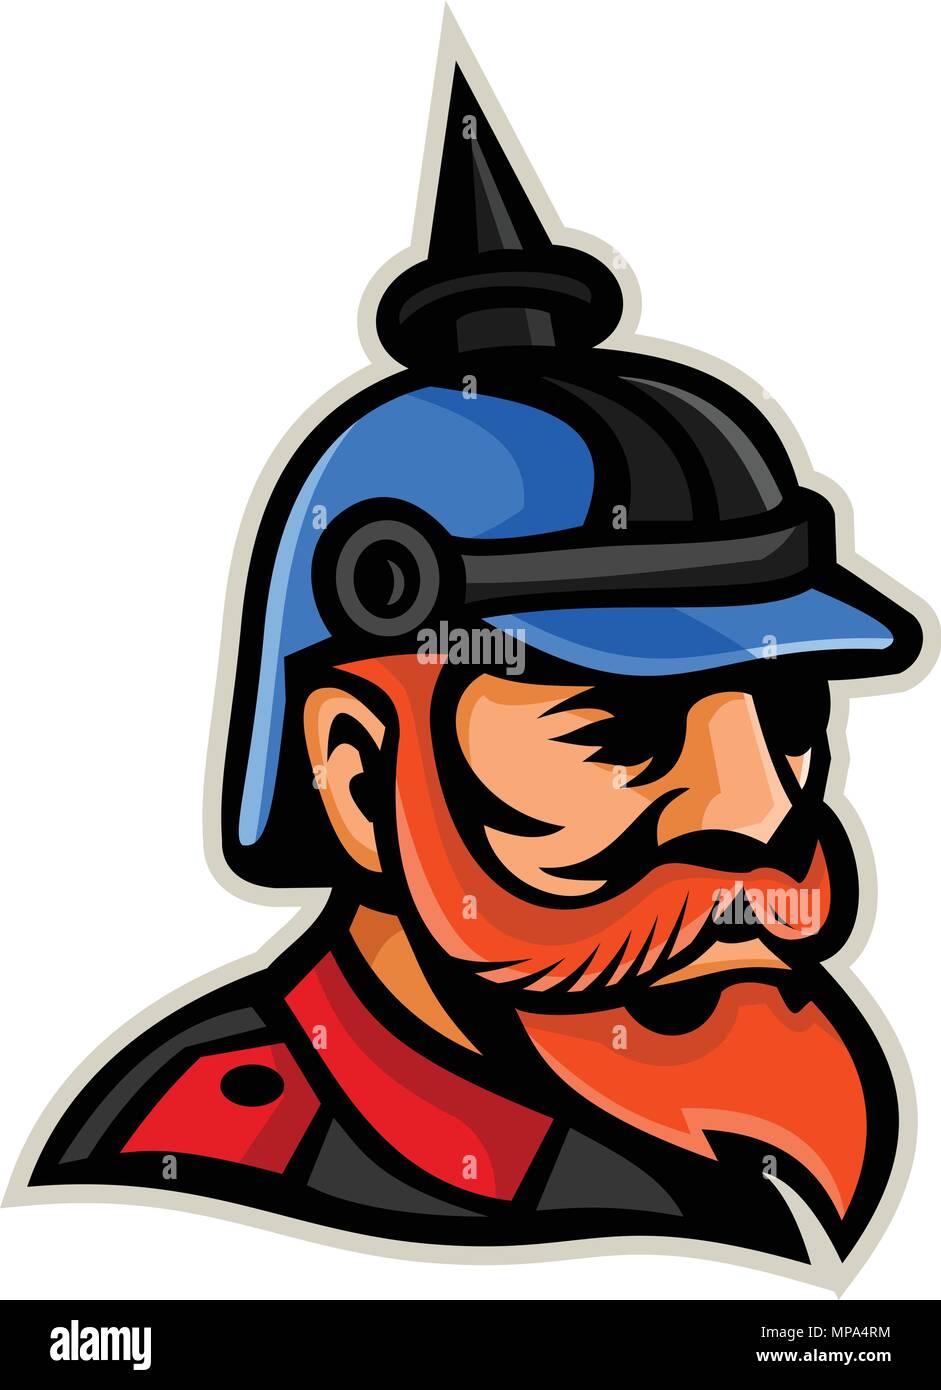 Icône mascotte illustration de tête d'un officier prussien pickelhaube ou pickelhelm le port d'un casque à pointe, un dix-neuvième et vingtième siècles usé par Illustration de Vecteur